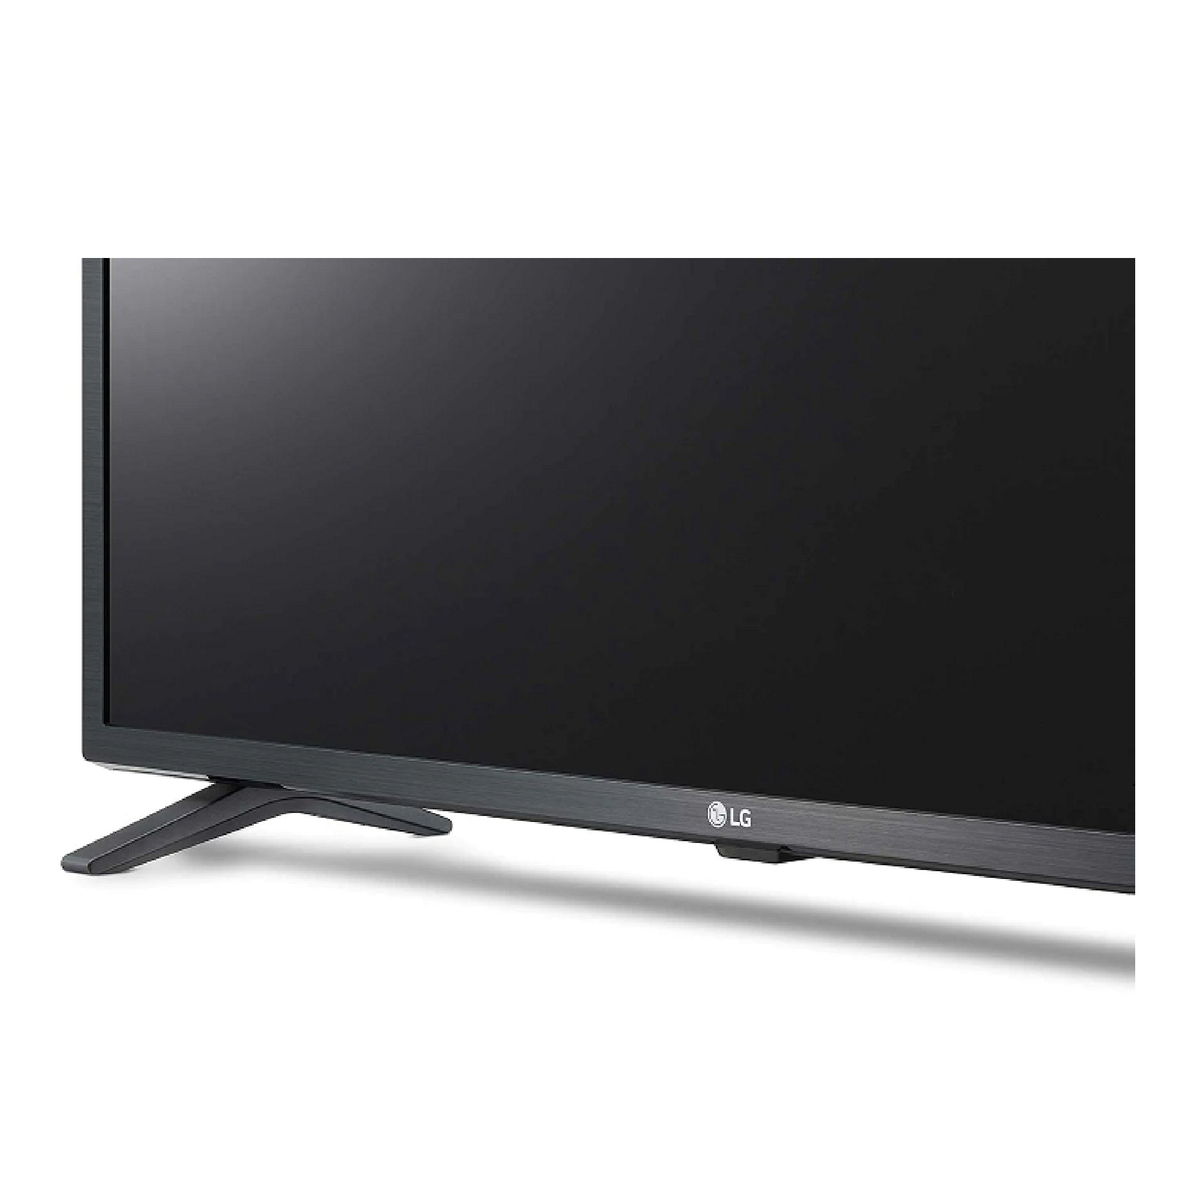 LG LED Smart TV 32 inch 32LM637BPVA LM637B Series HD HDR Smart LED TV